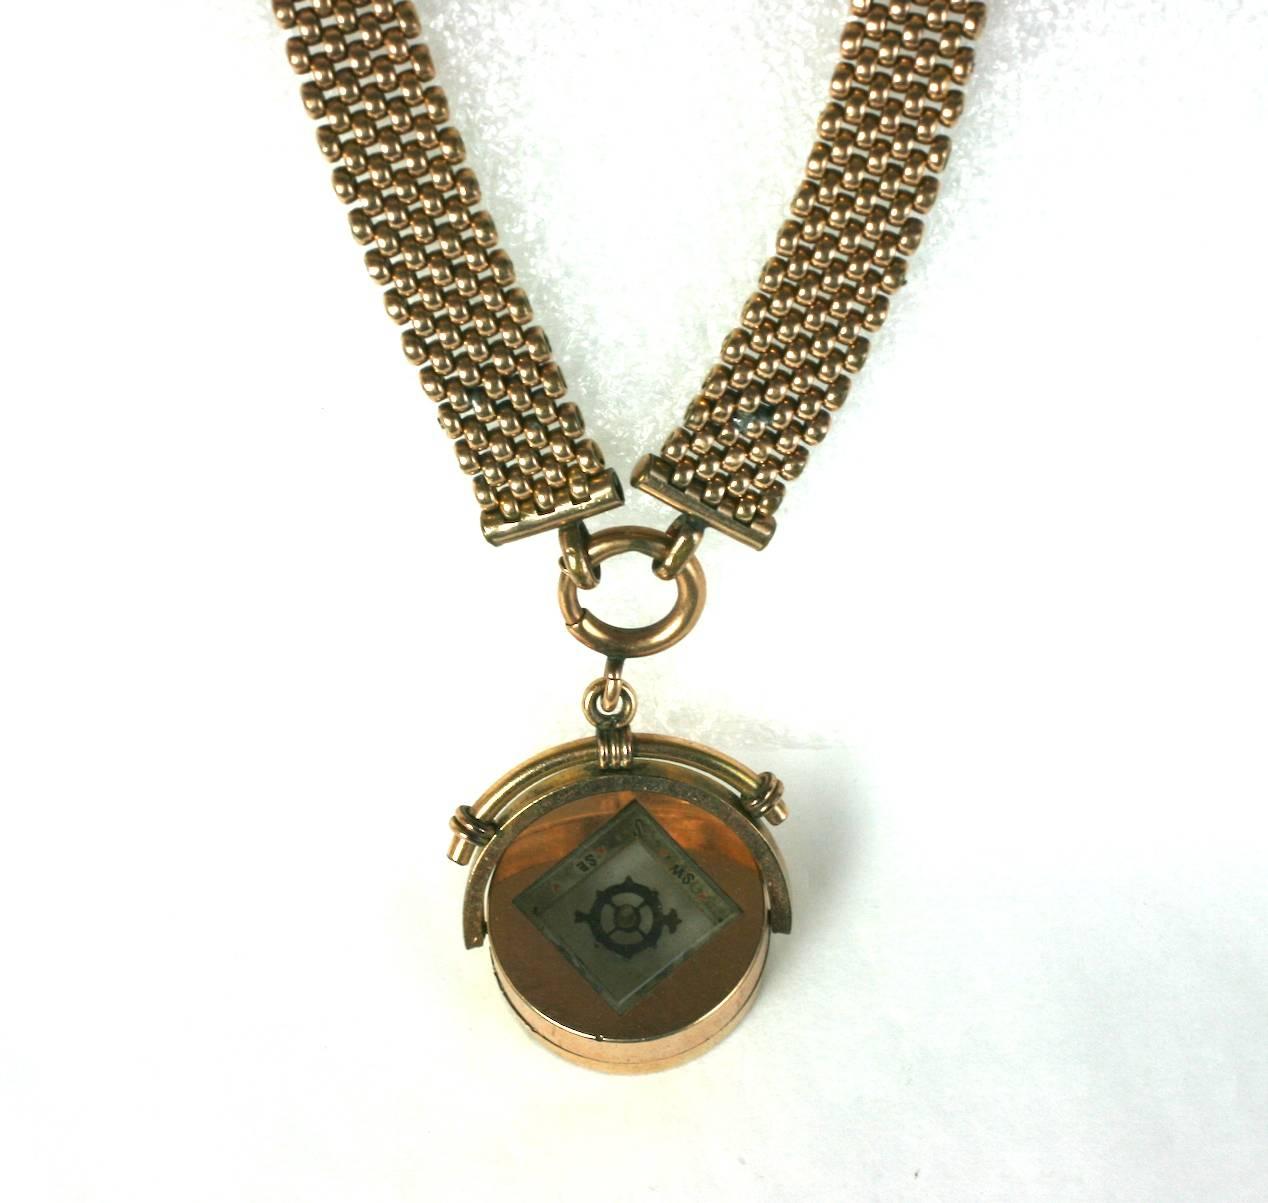 Victorian Swivel Compass Necklace, Original Gold gefüllt Mesh-Gliederkette ist mit einem schönen, späten viktorianischen Funktionieren, Gold gefüllt Swivel Medaillon abgestimmt. Der Kompassanhänger ist umkehrbar und funktioniert auf beiden Seiten.